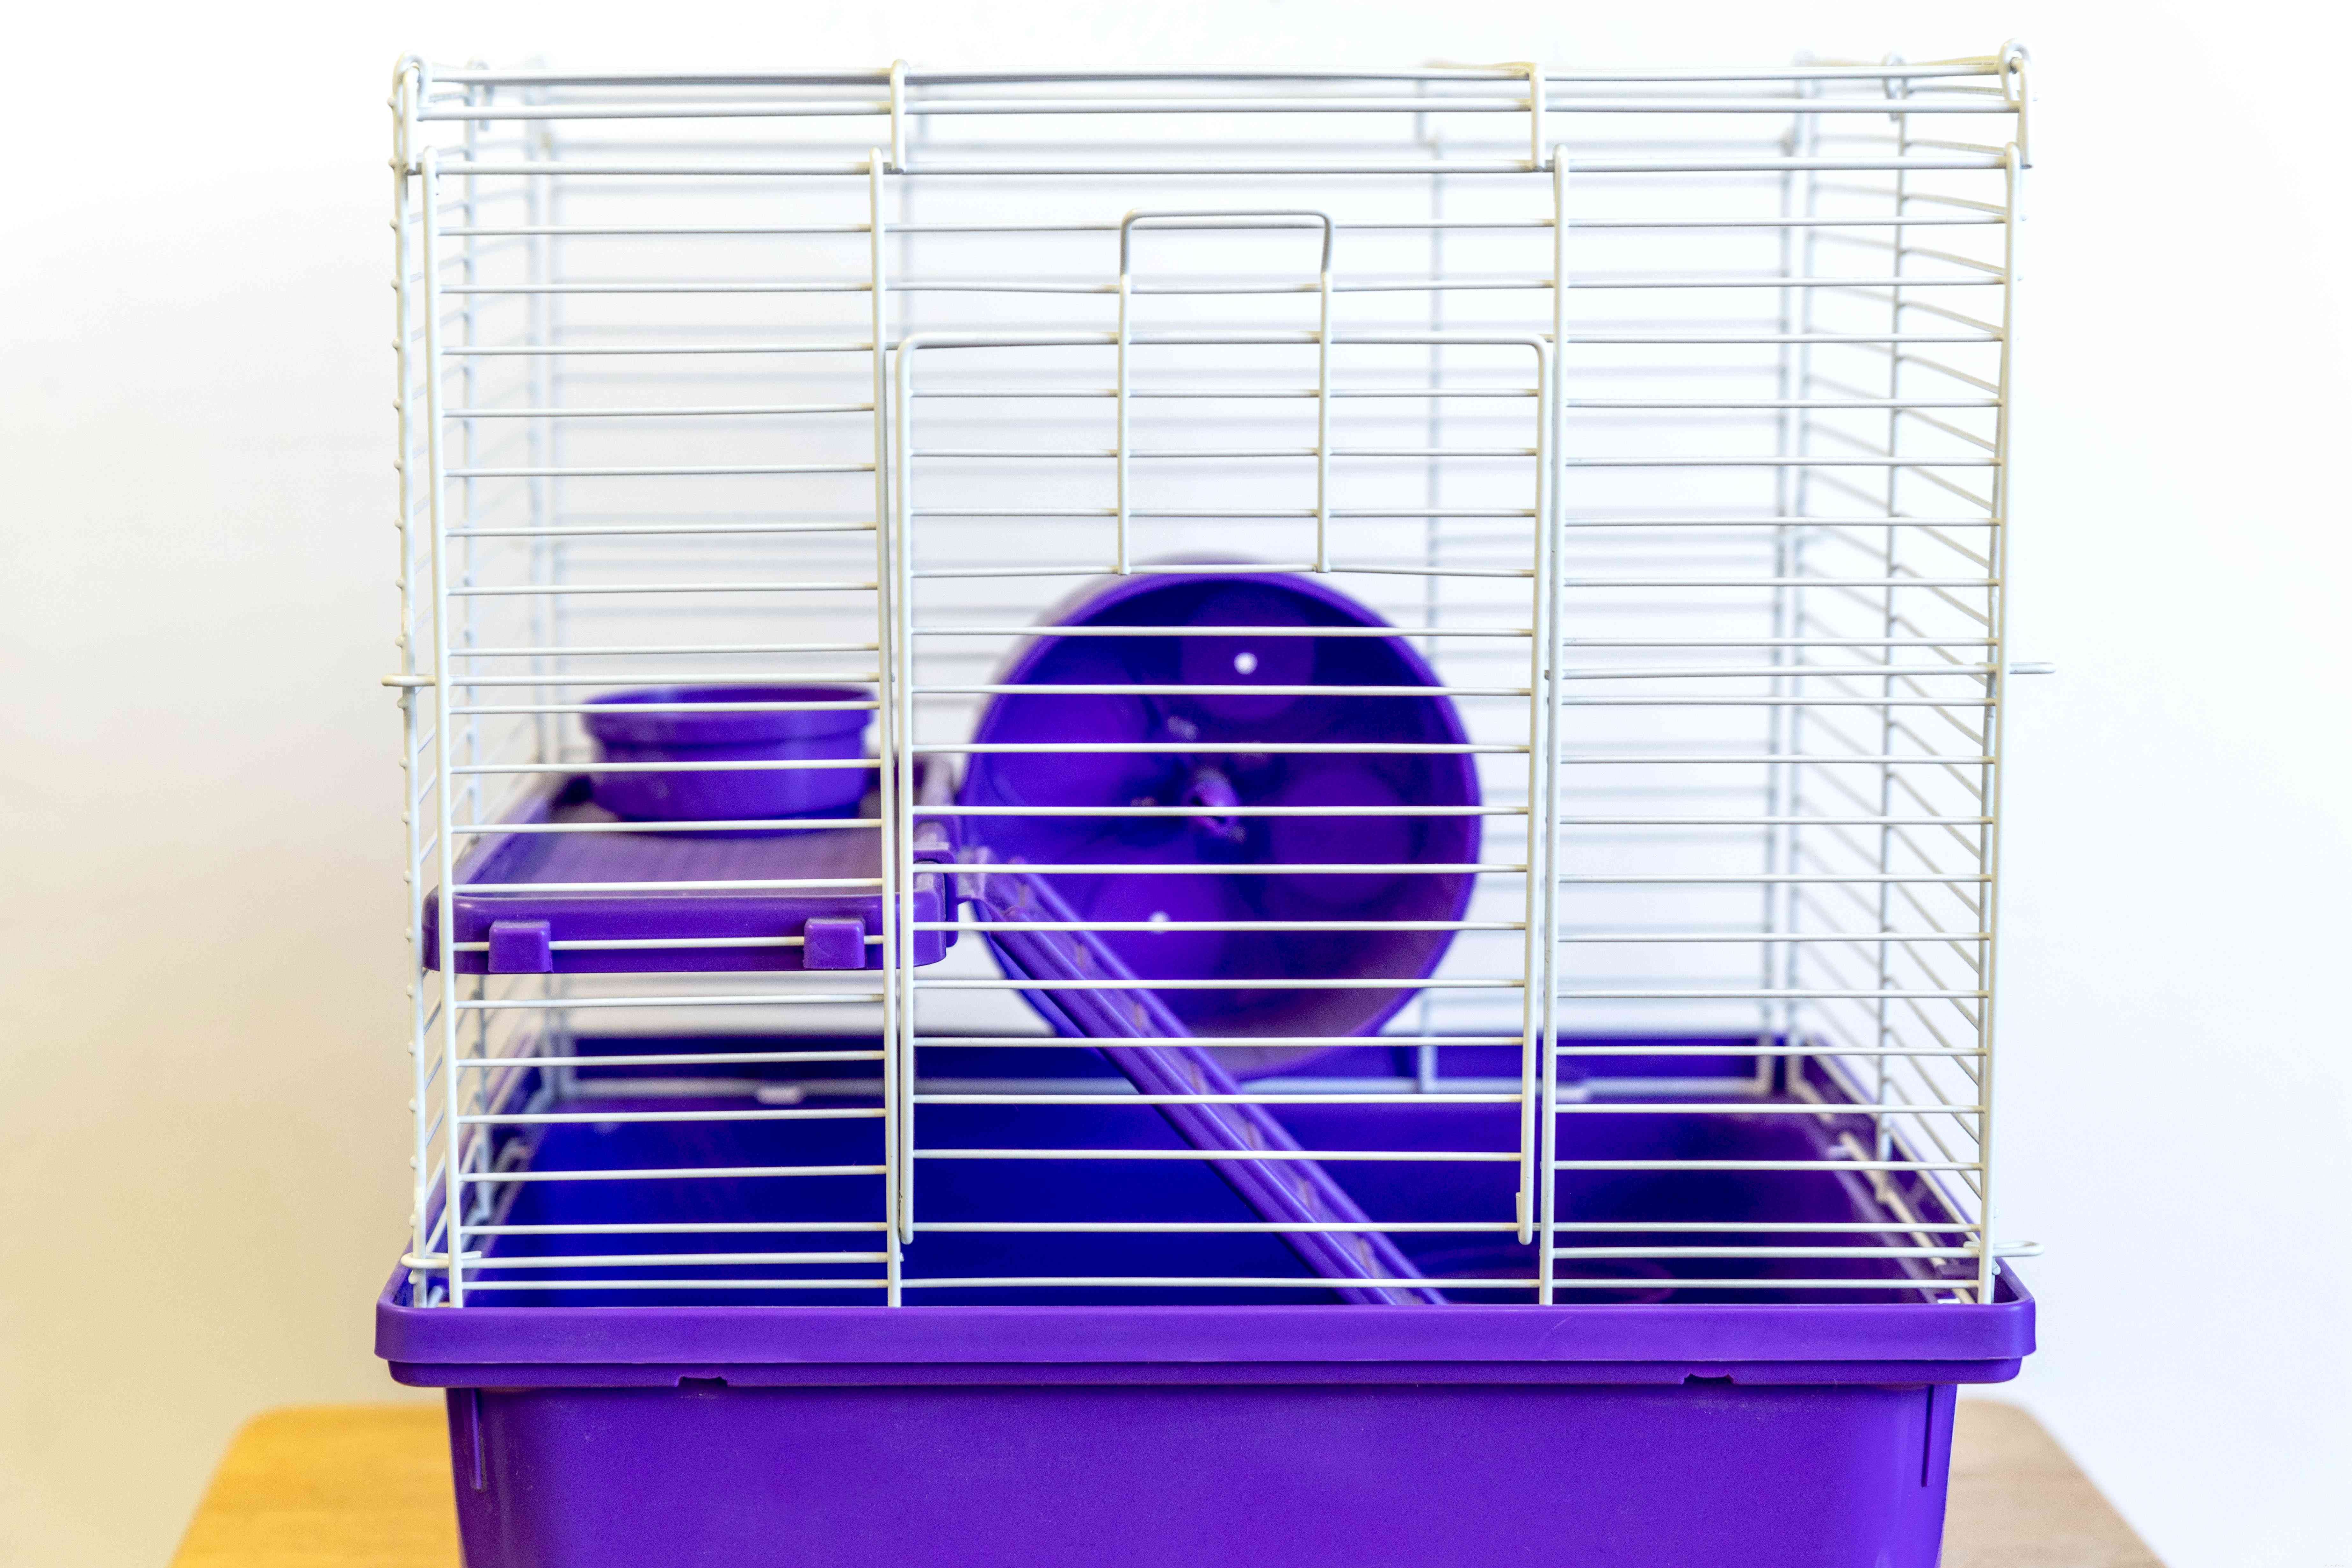 Håll hamstrar som husdjur:skötselinformation